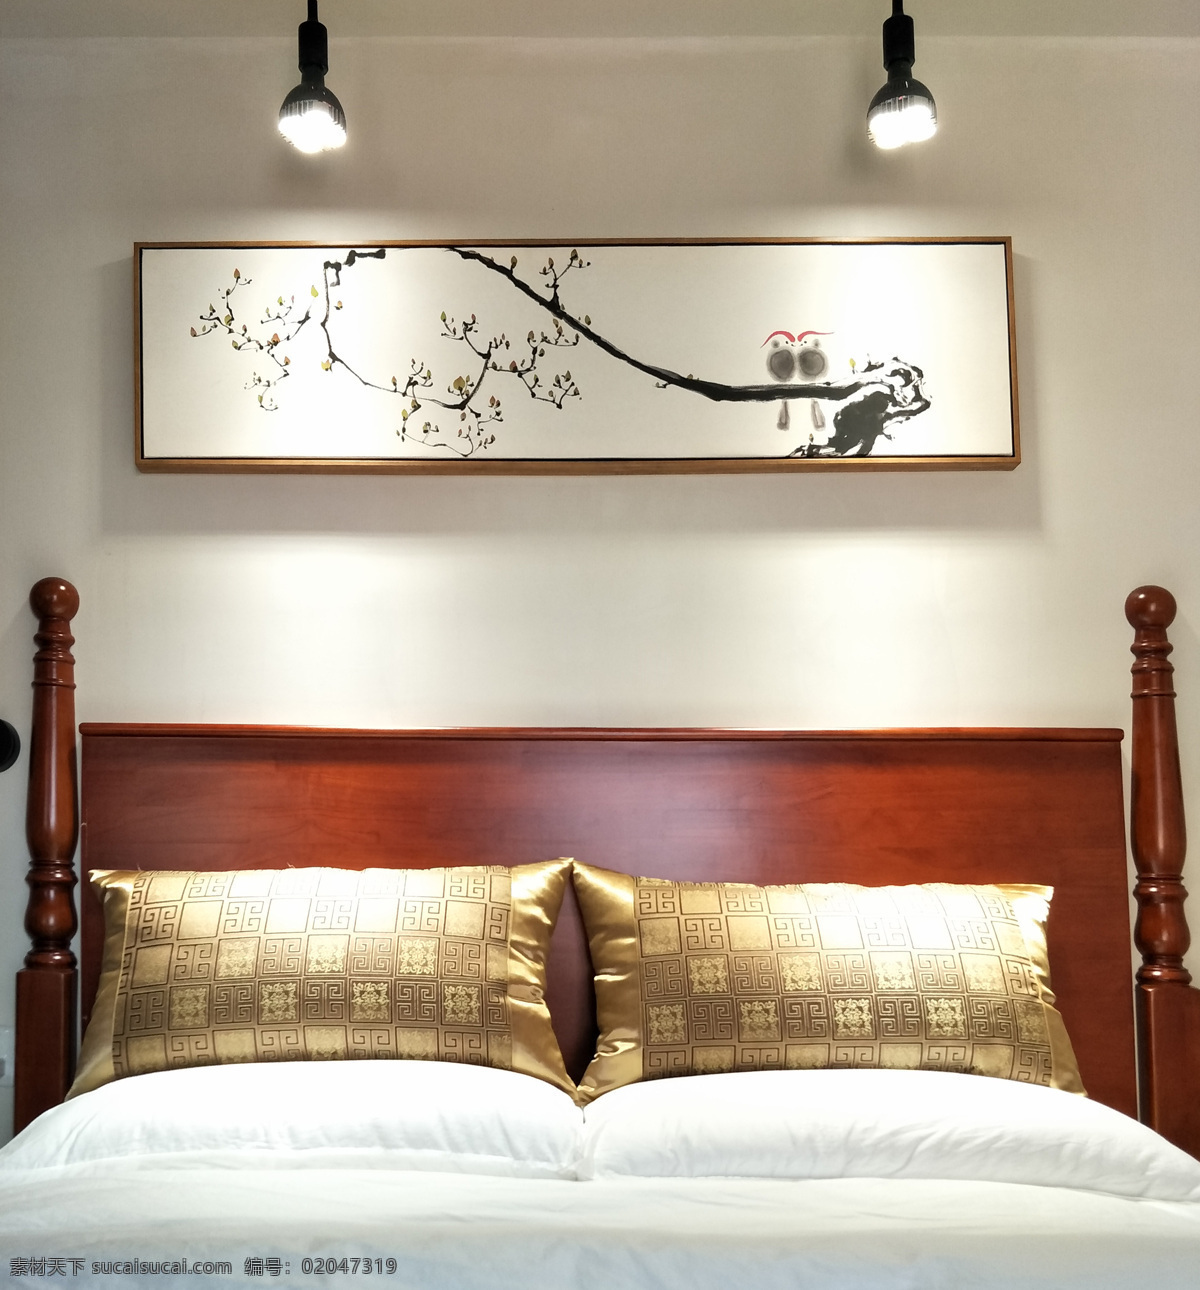 新 中式 卧室 床头 画 床头画 新中式 古典 建筑园林 室内摄影